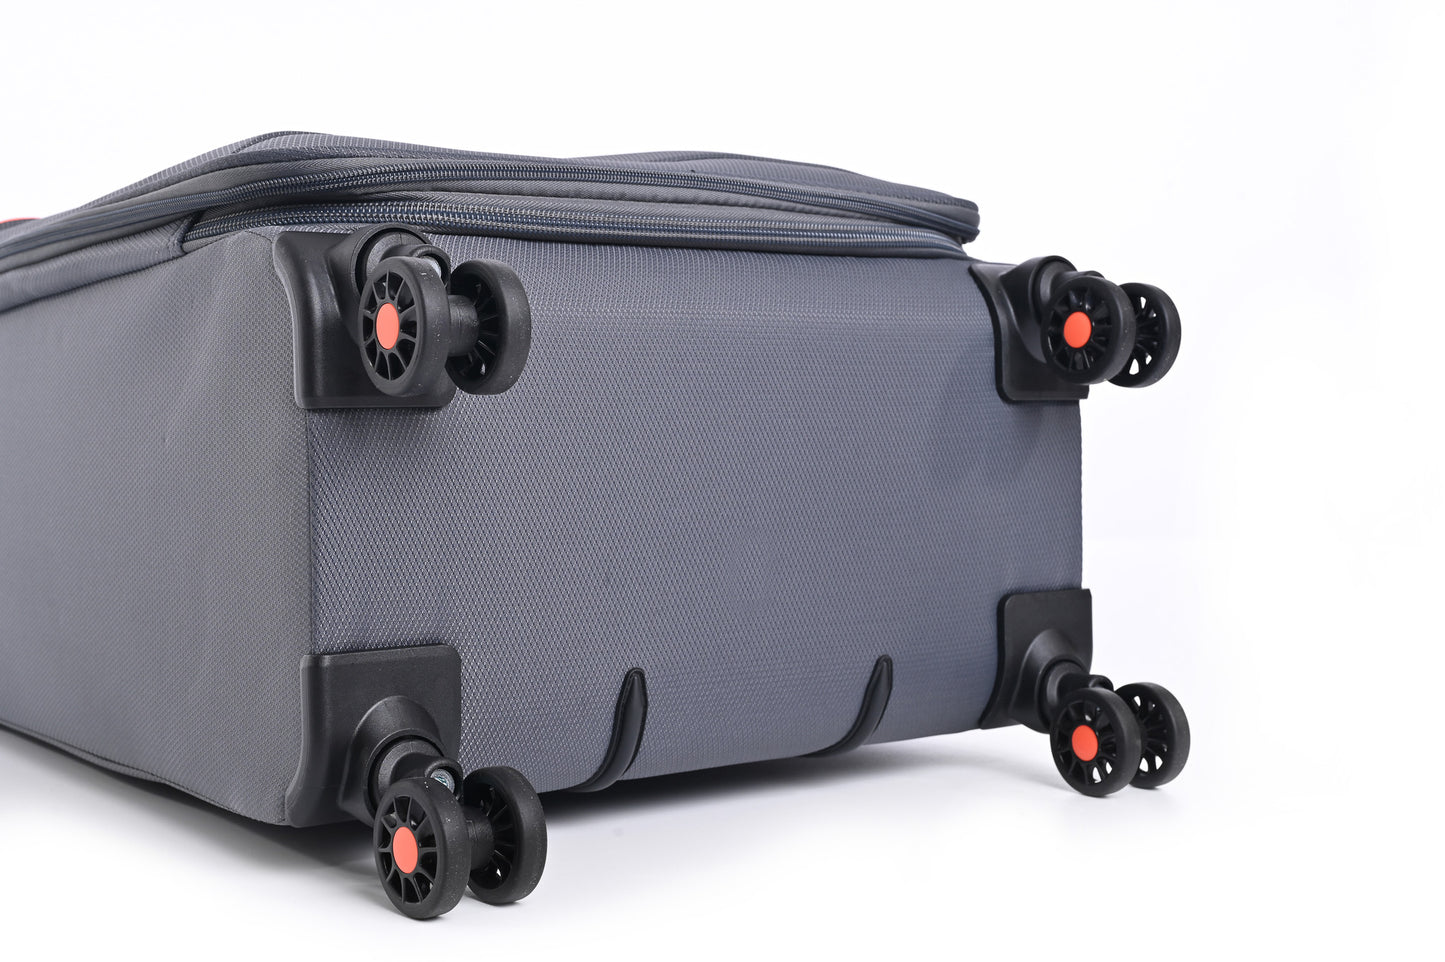 מזוודה מבד בינונית 23.5" דגם BARCELONA בצבע אפור